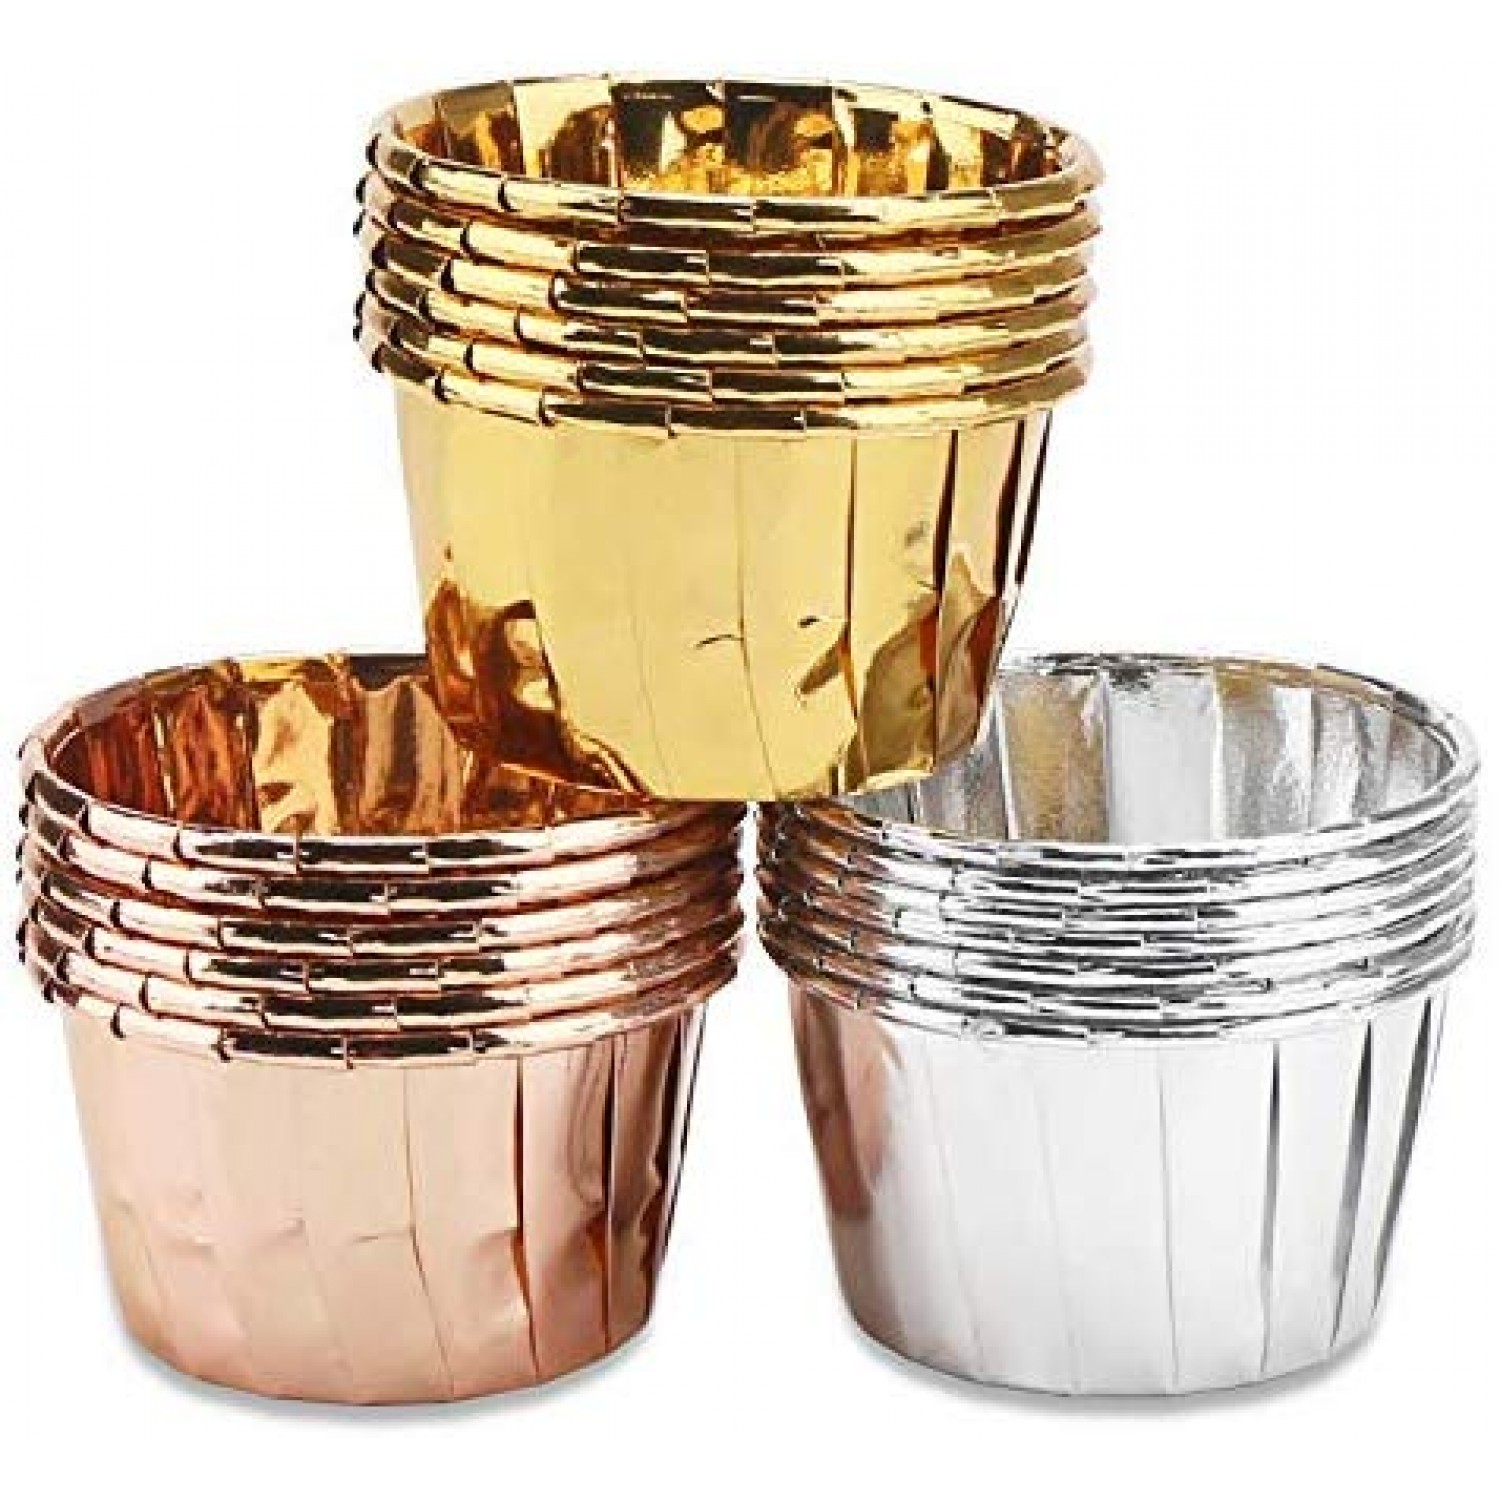 150 Pcs Aluminum Foil Cupcake Cups Ramekin Muffin Baking Cups